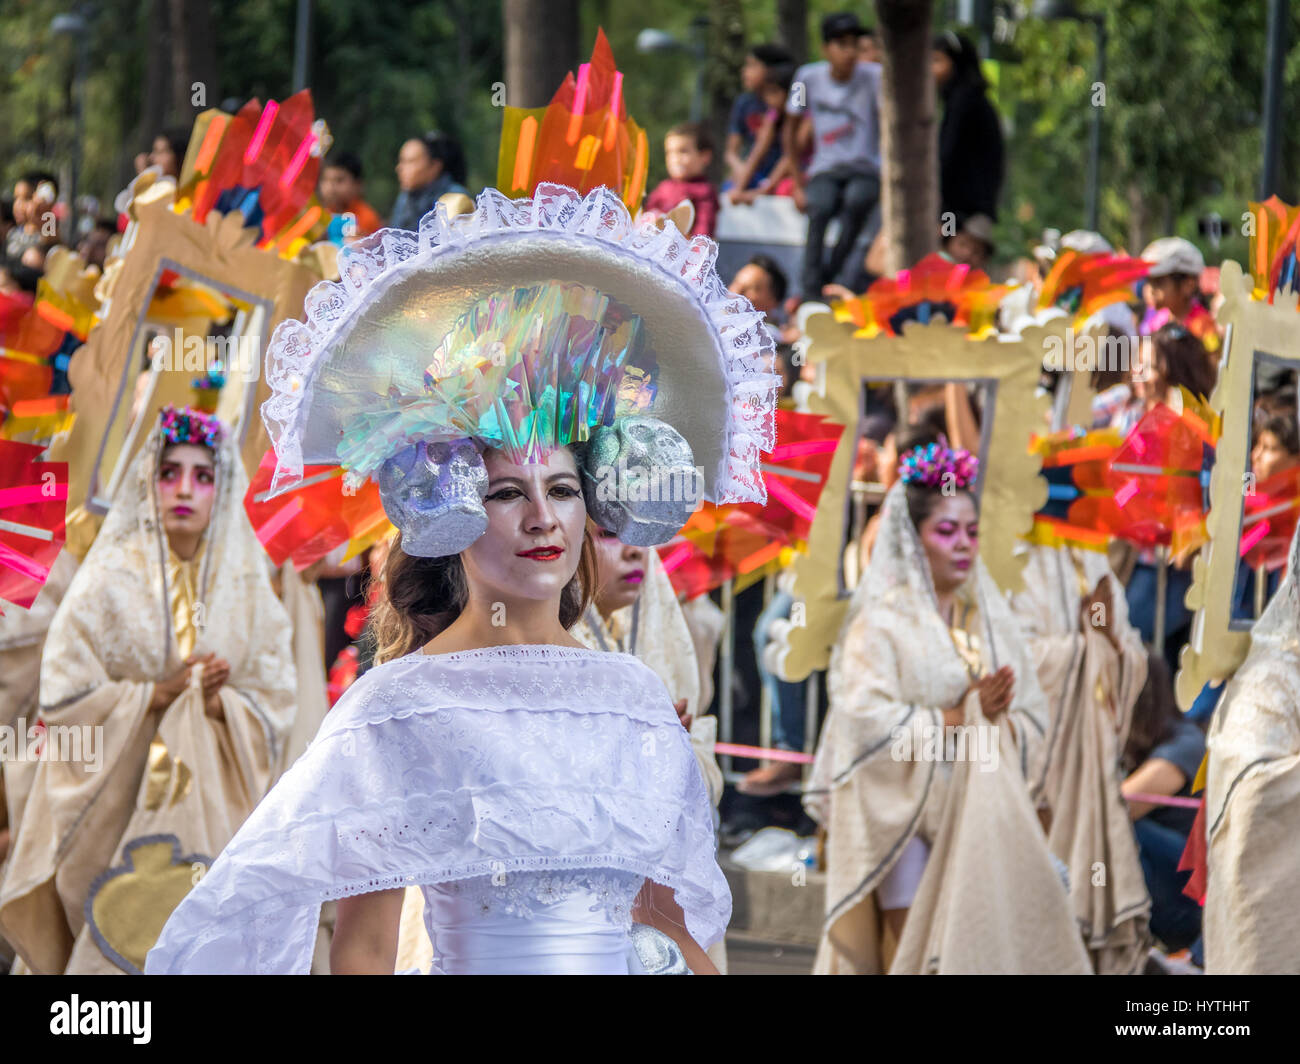 Il giorno dei morti (Dia de los Muertos) sfilano in Città del Messico - Messico Foto Stock